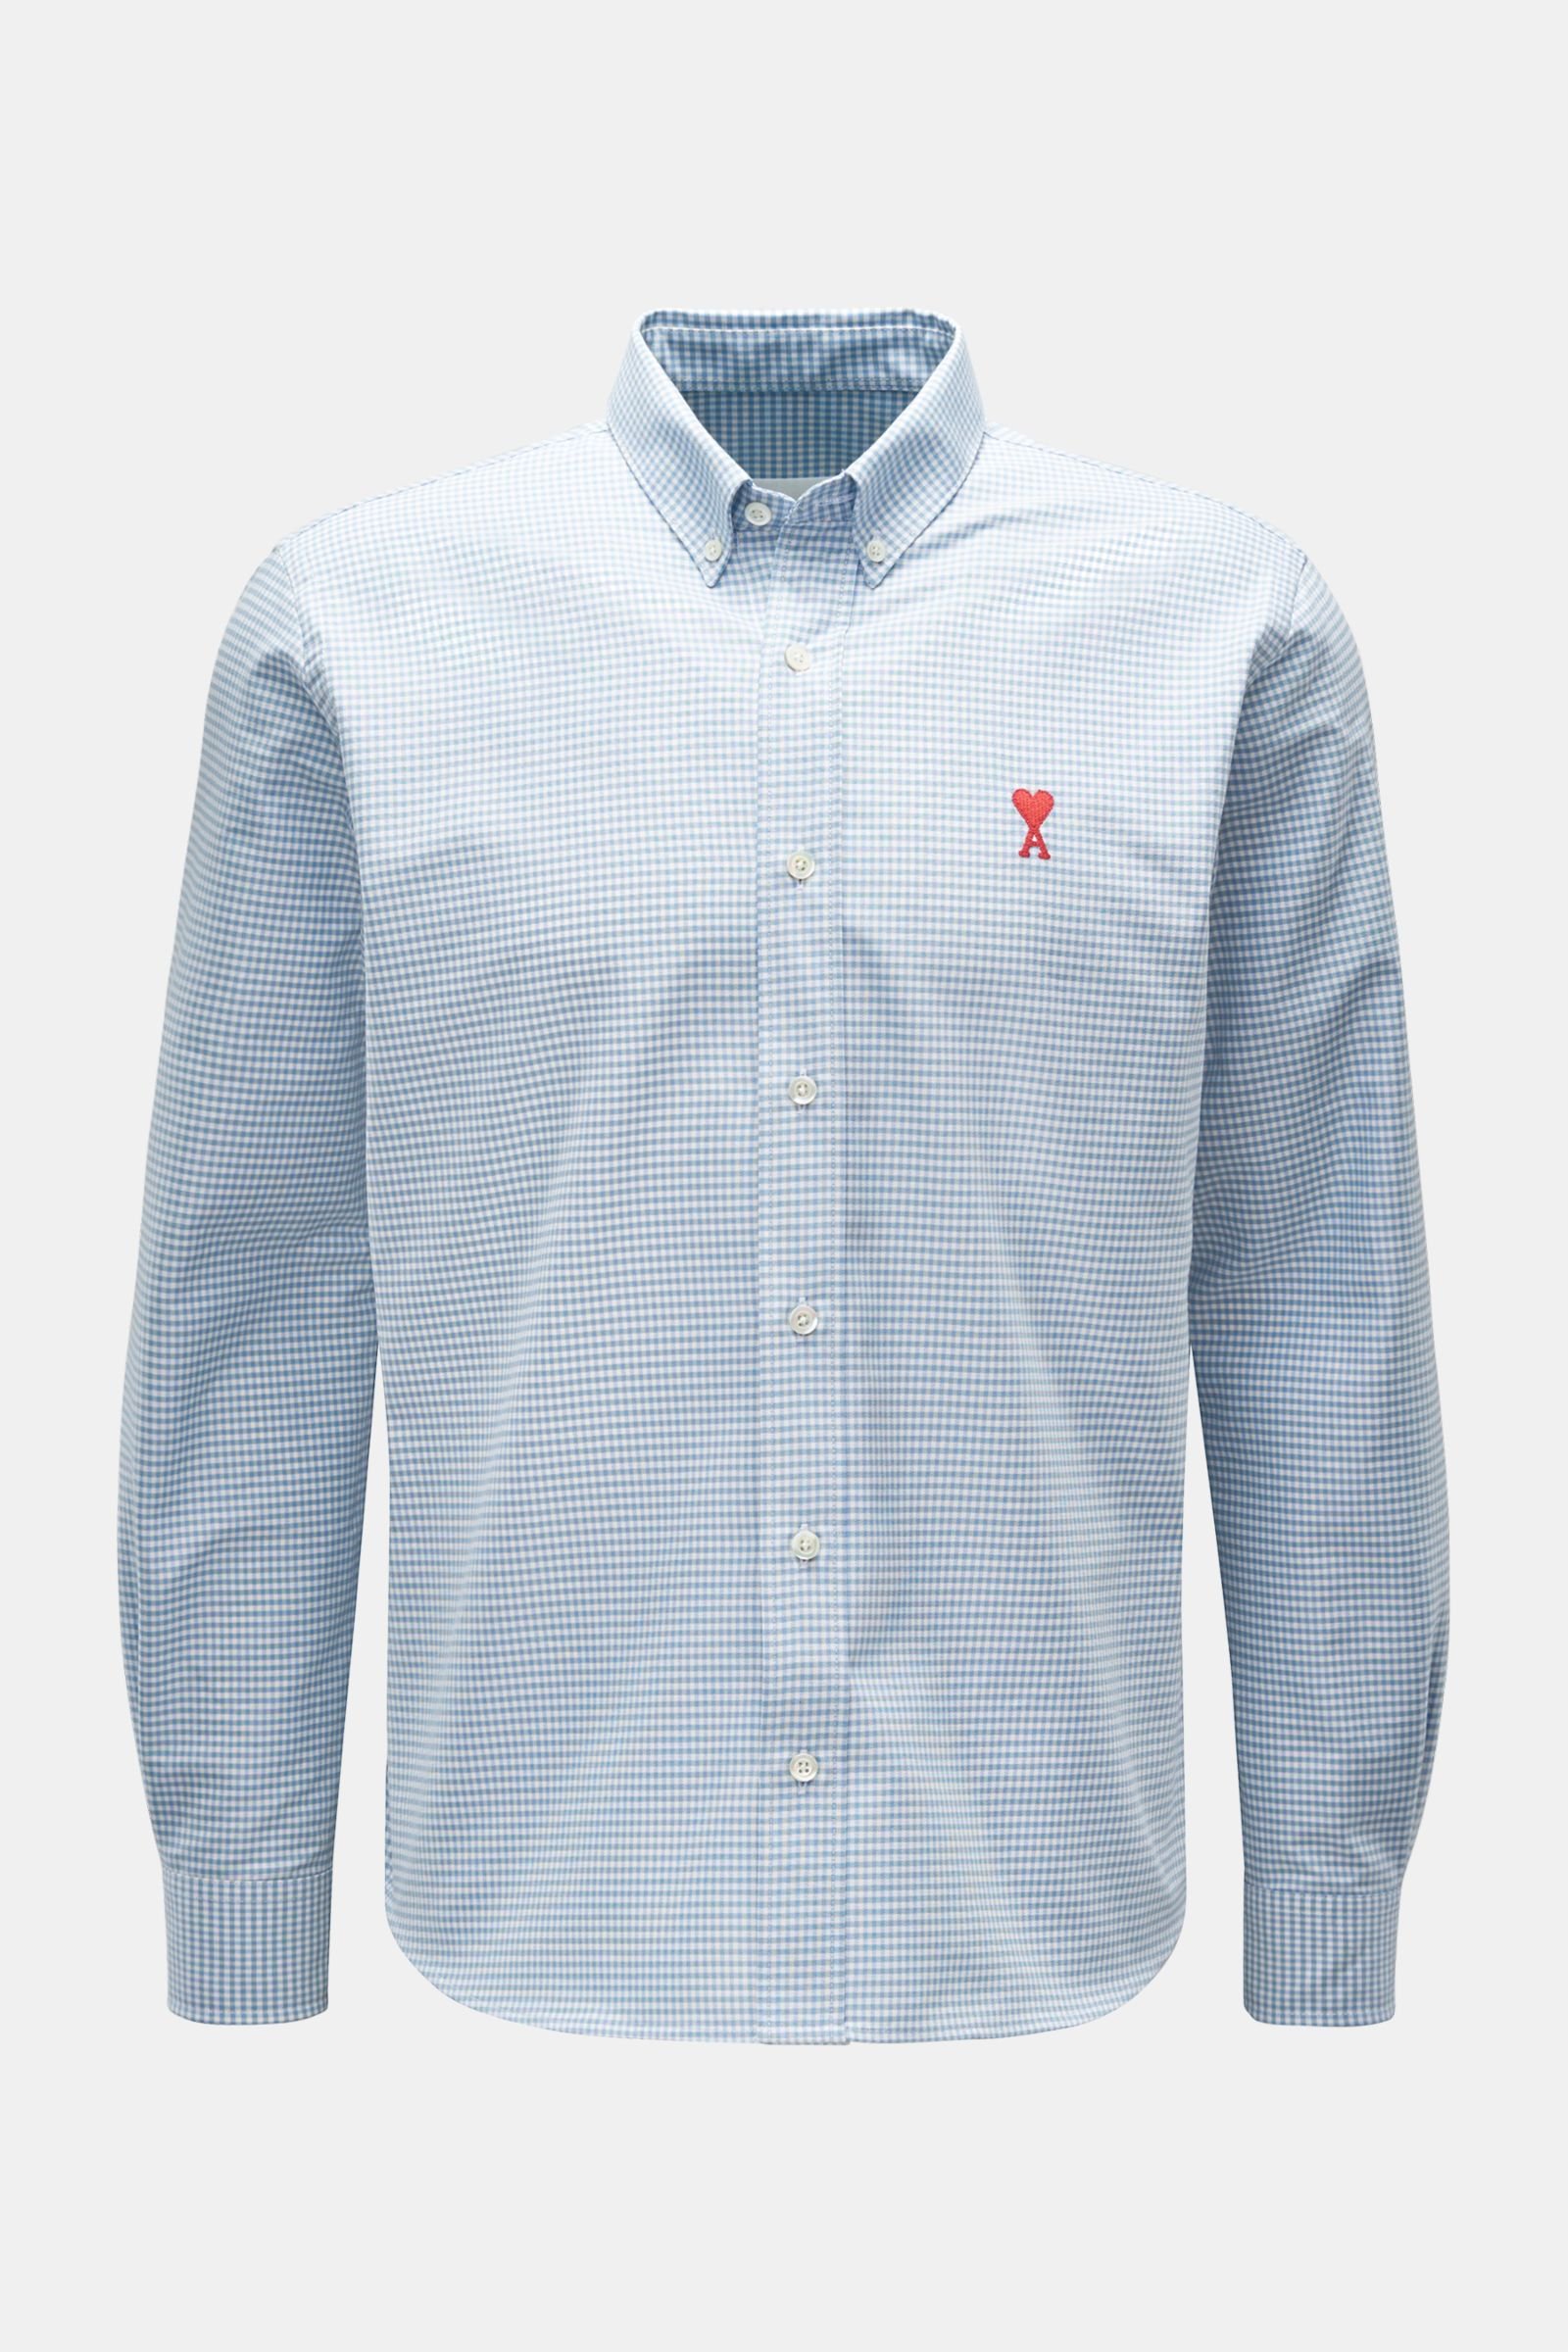 Oxfordhemd Button-Down-Kragen hellblau/weiß kariert